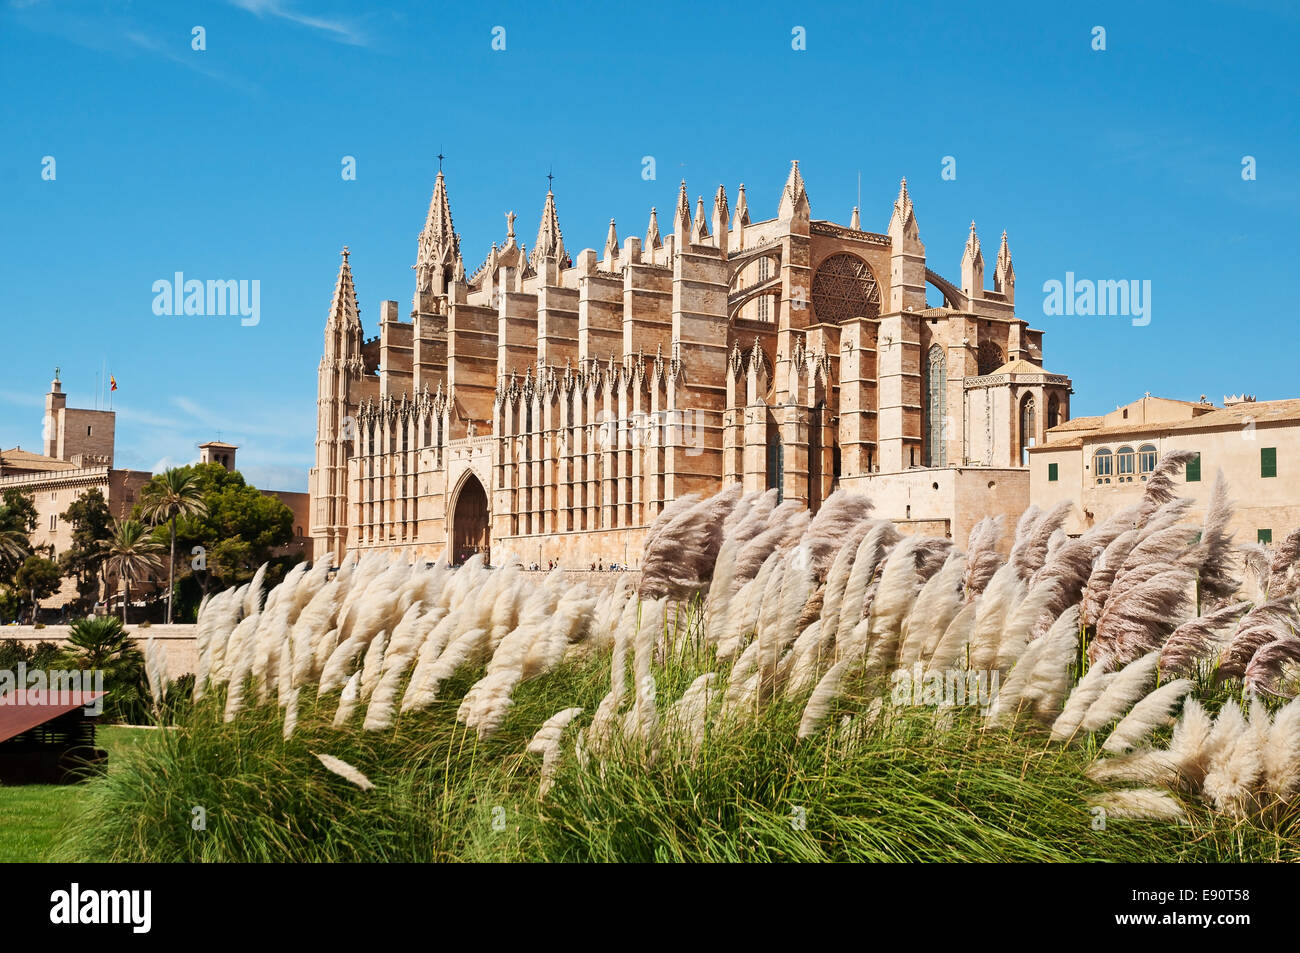 Cathedral of Palma de Mallorca Stock Photo